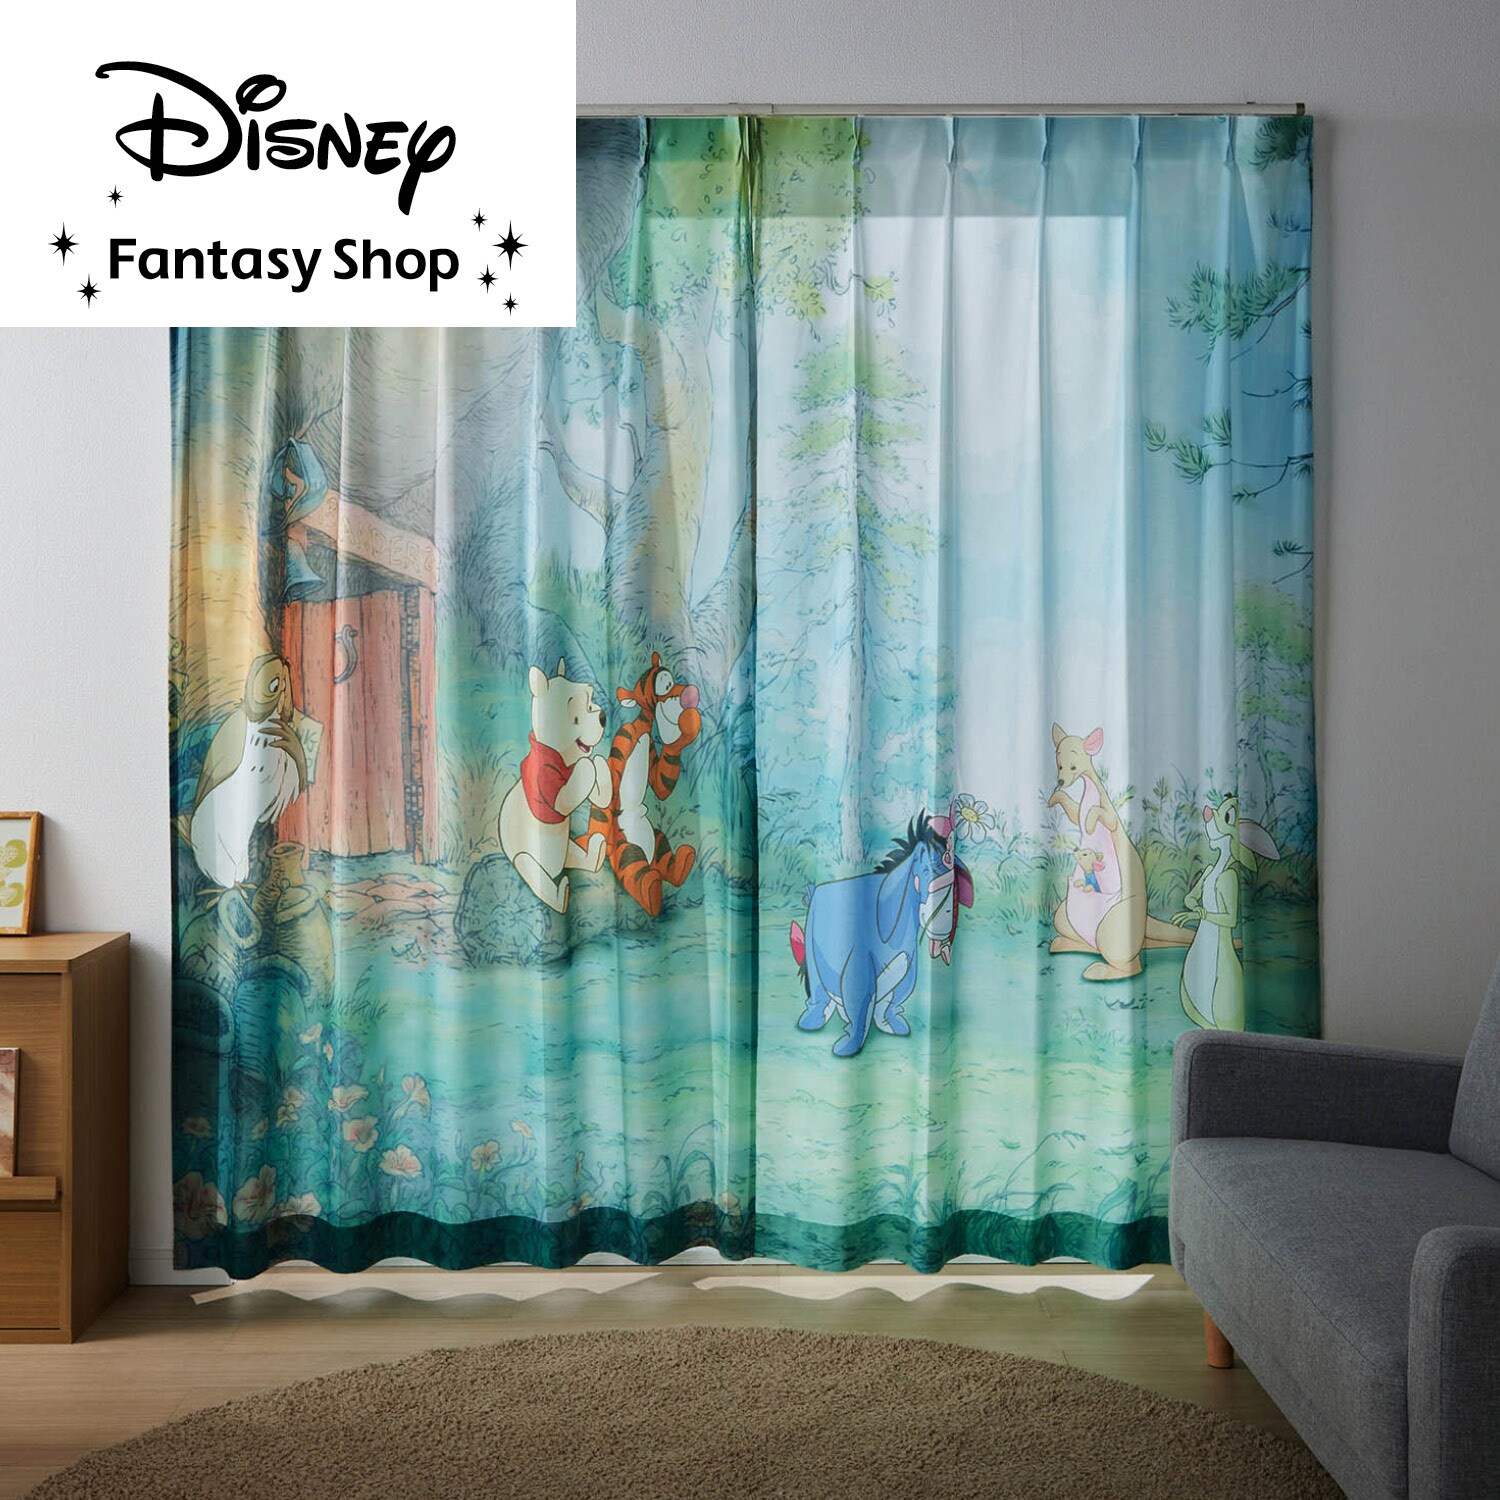 【ディズニー/Disney】一枚絵のようなUVカット・遮熱・遮像ボイルカーテン(選べるキャラクター)